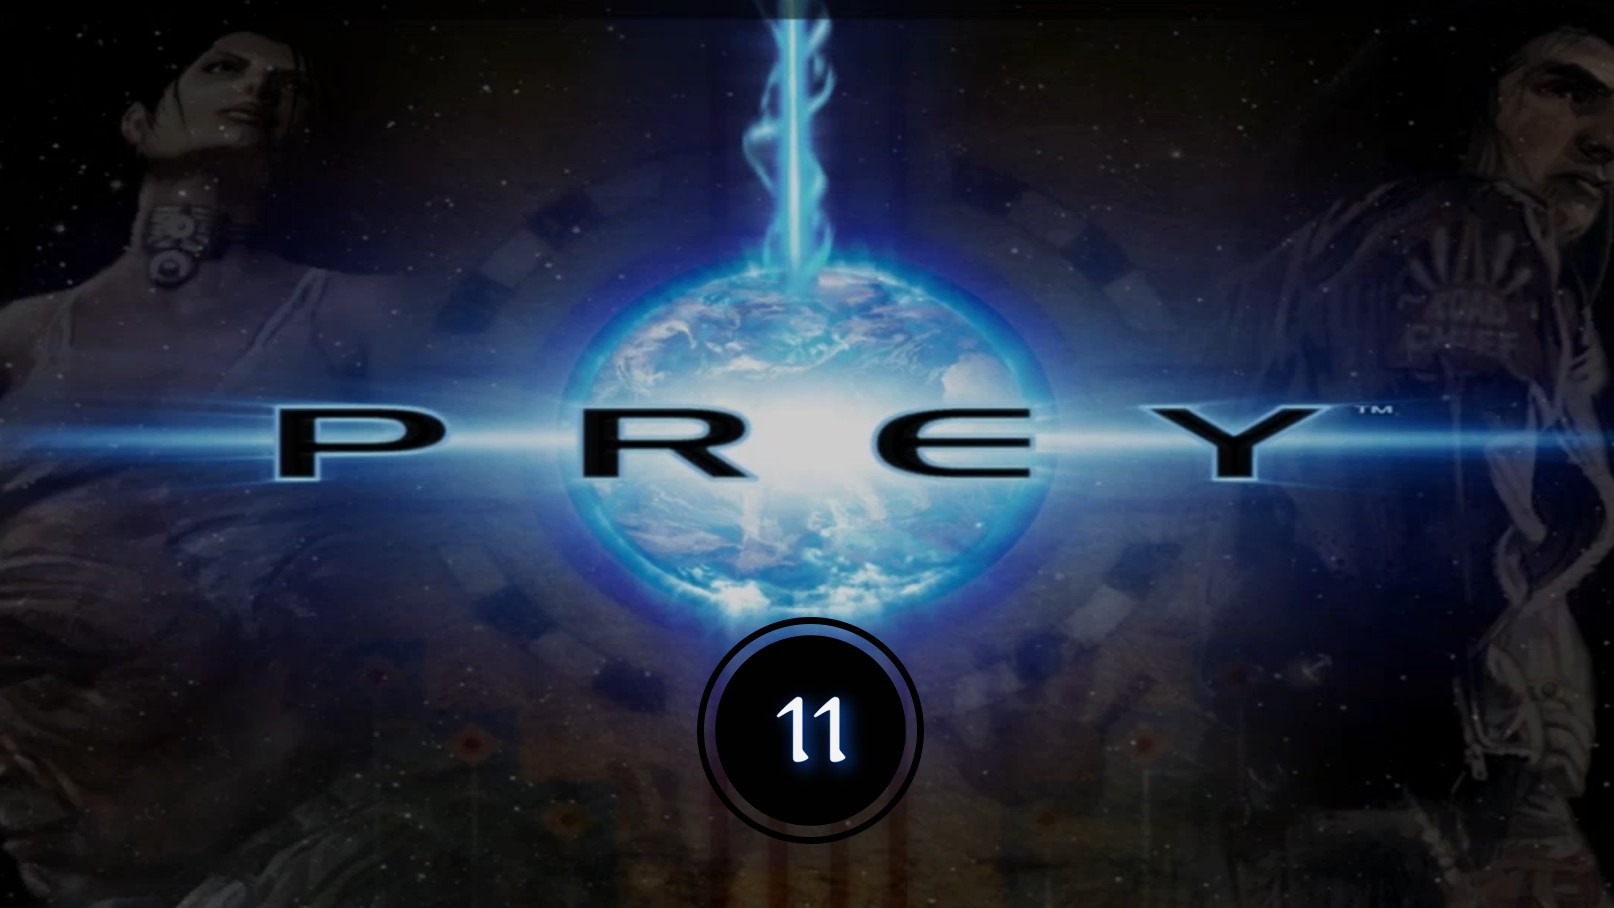 Prey (2006) 11